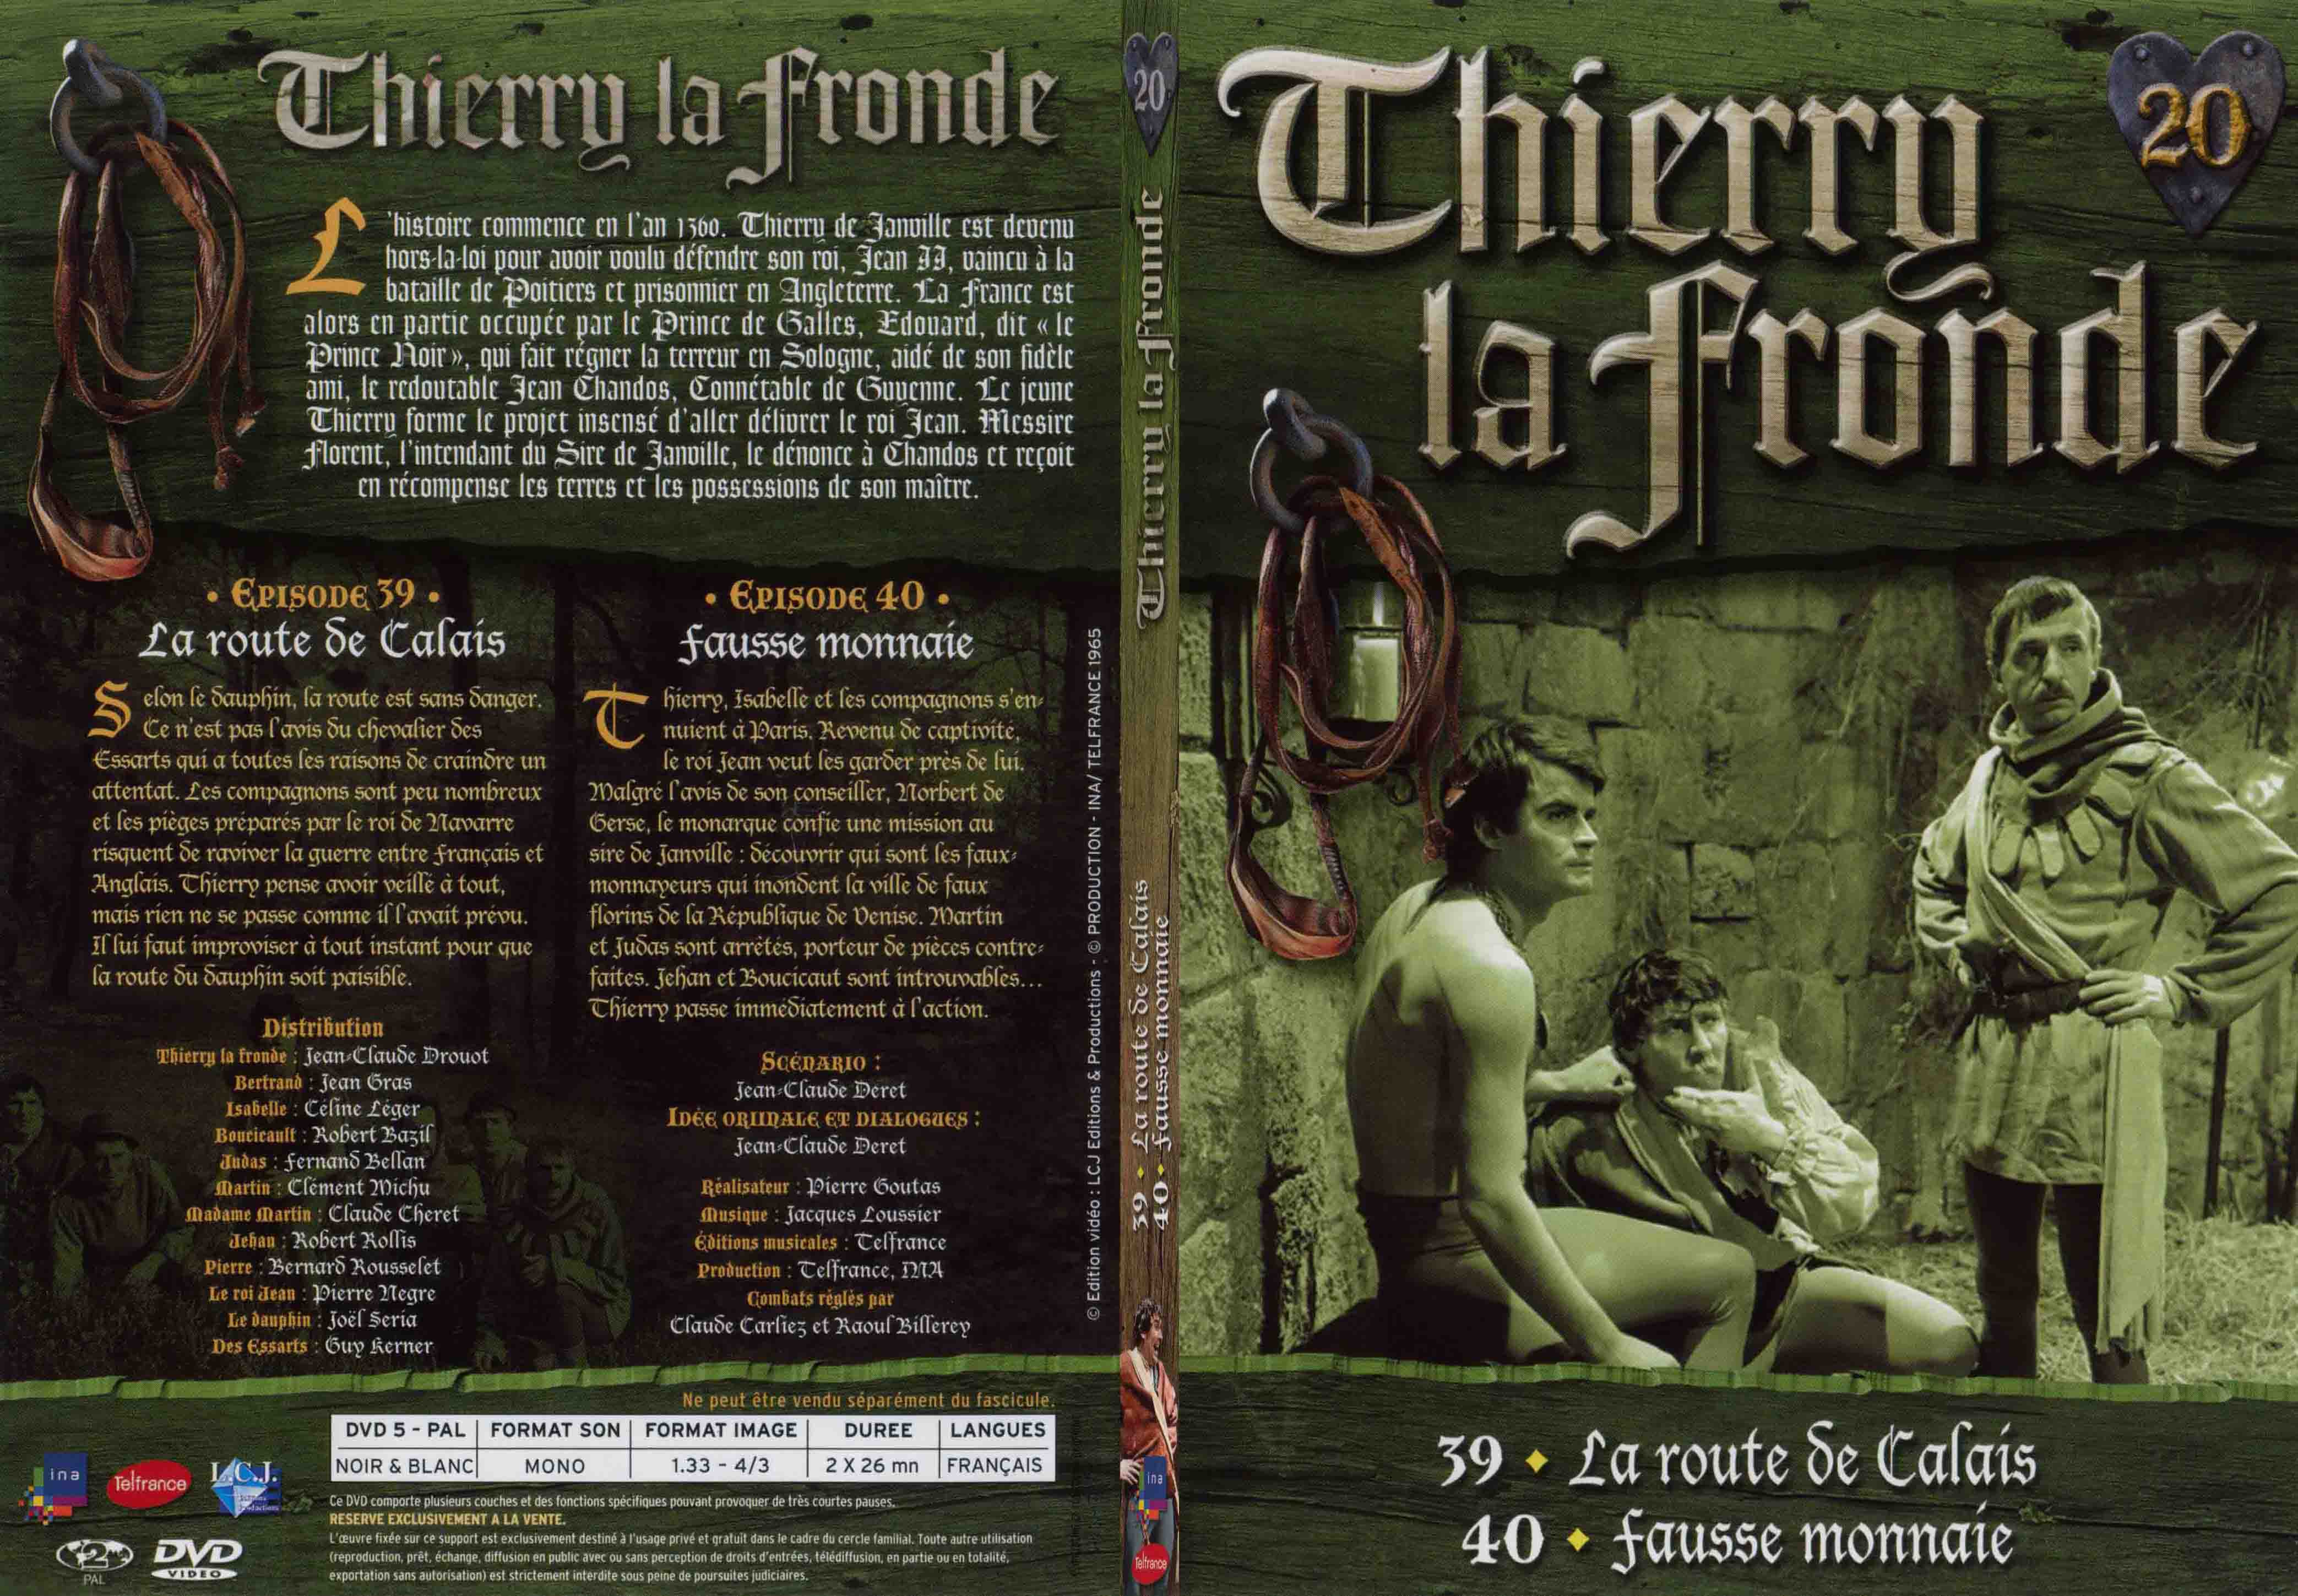 Jaquette DVD Thierry la Fronde vol 20 - SLIM